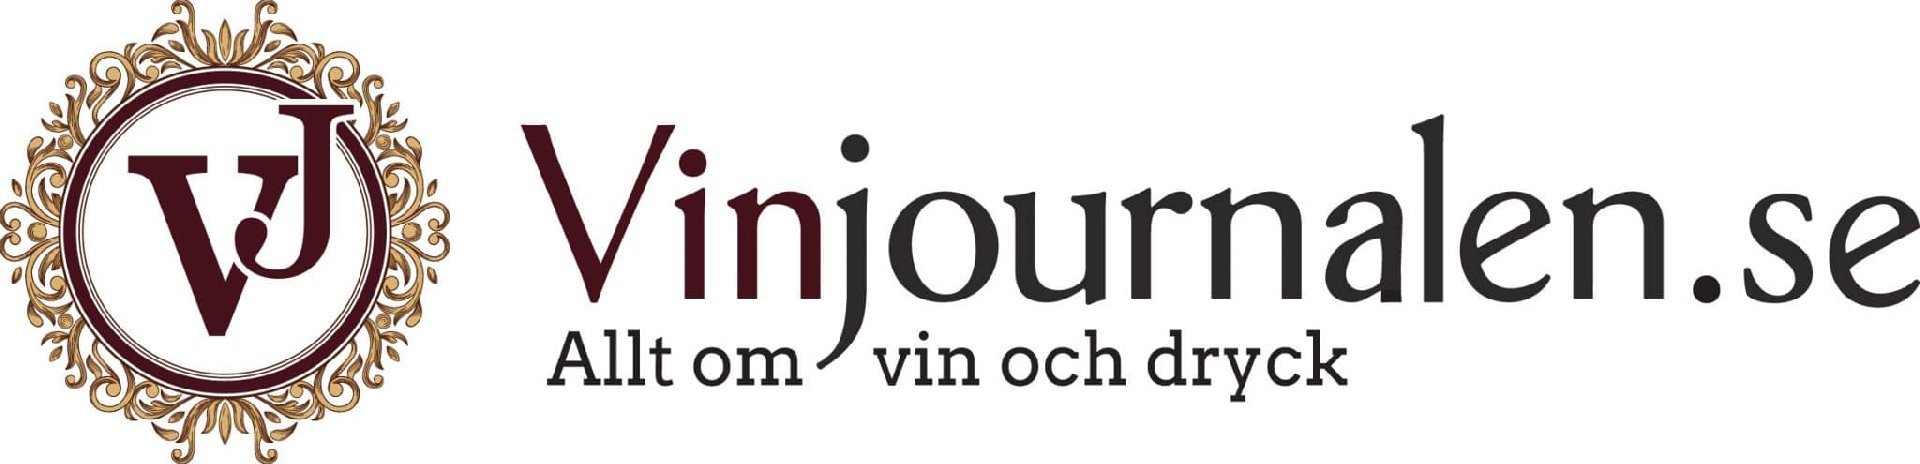 Vinjournalen.se - Allt om vin och dryck